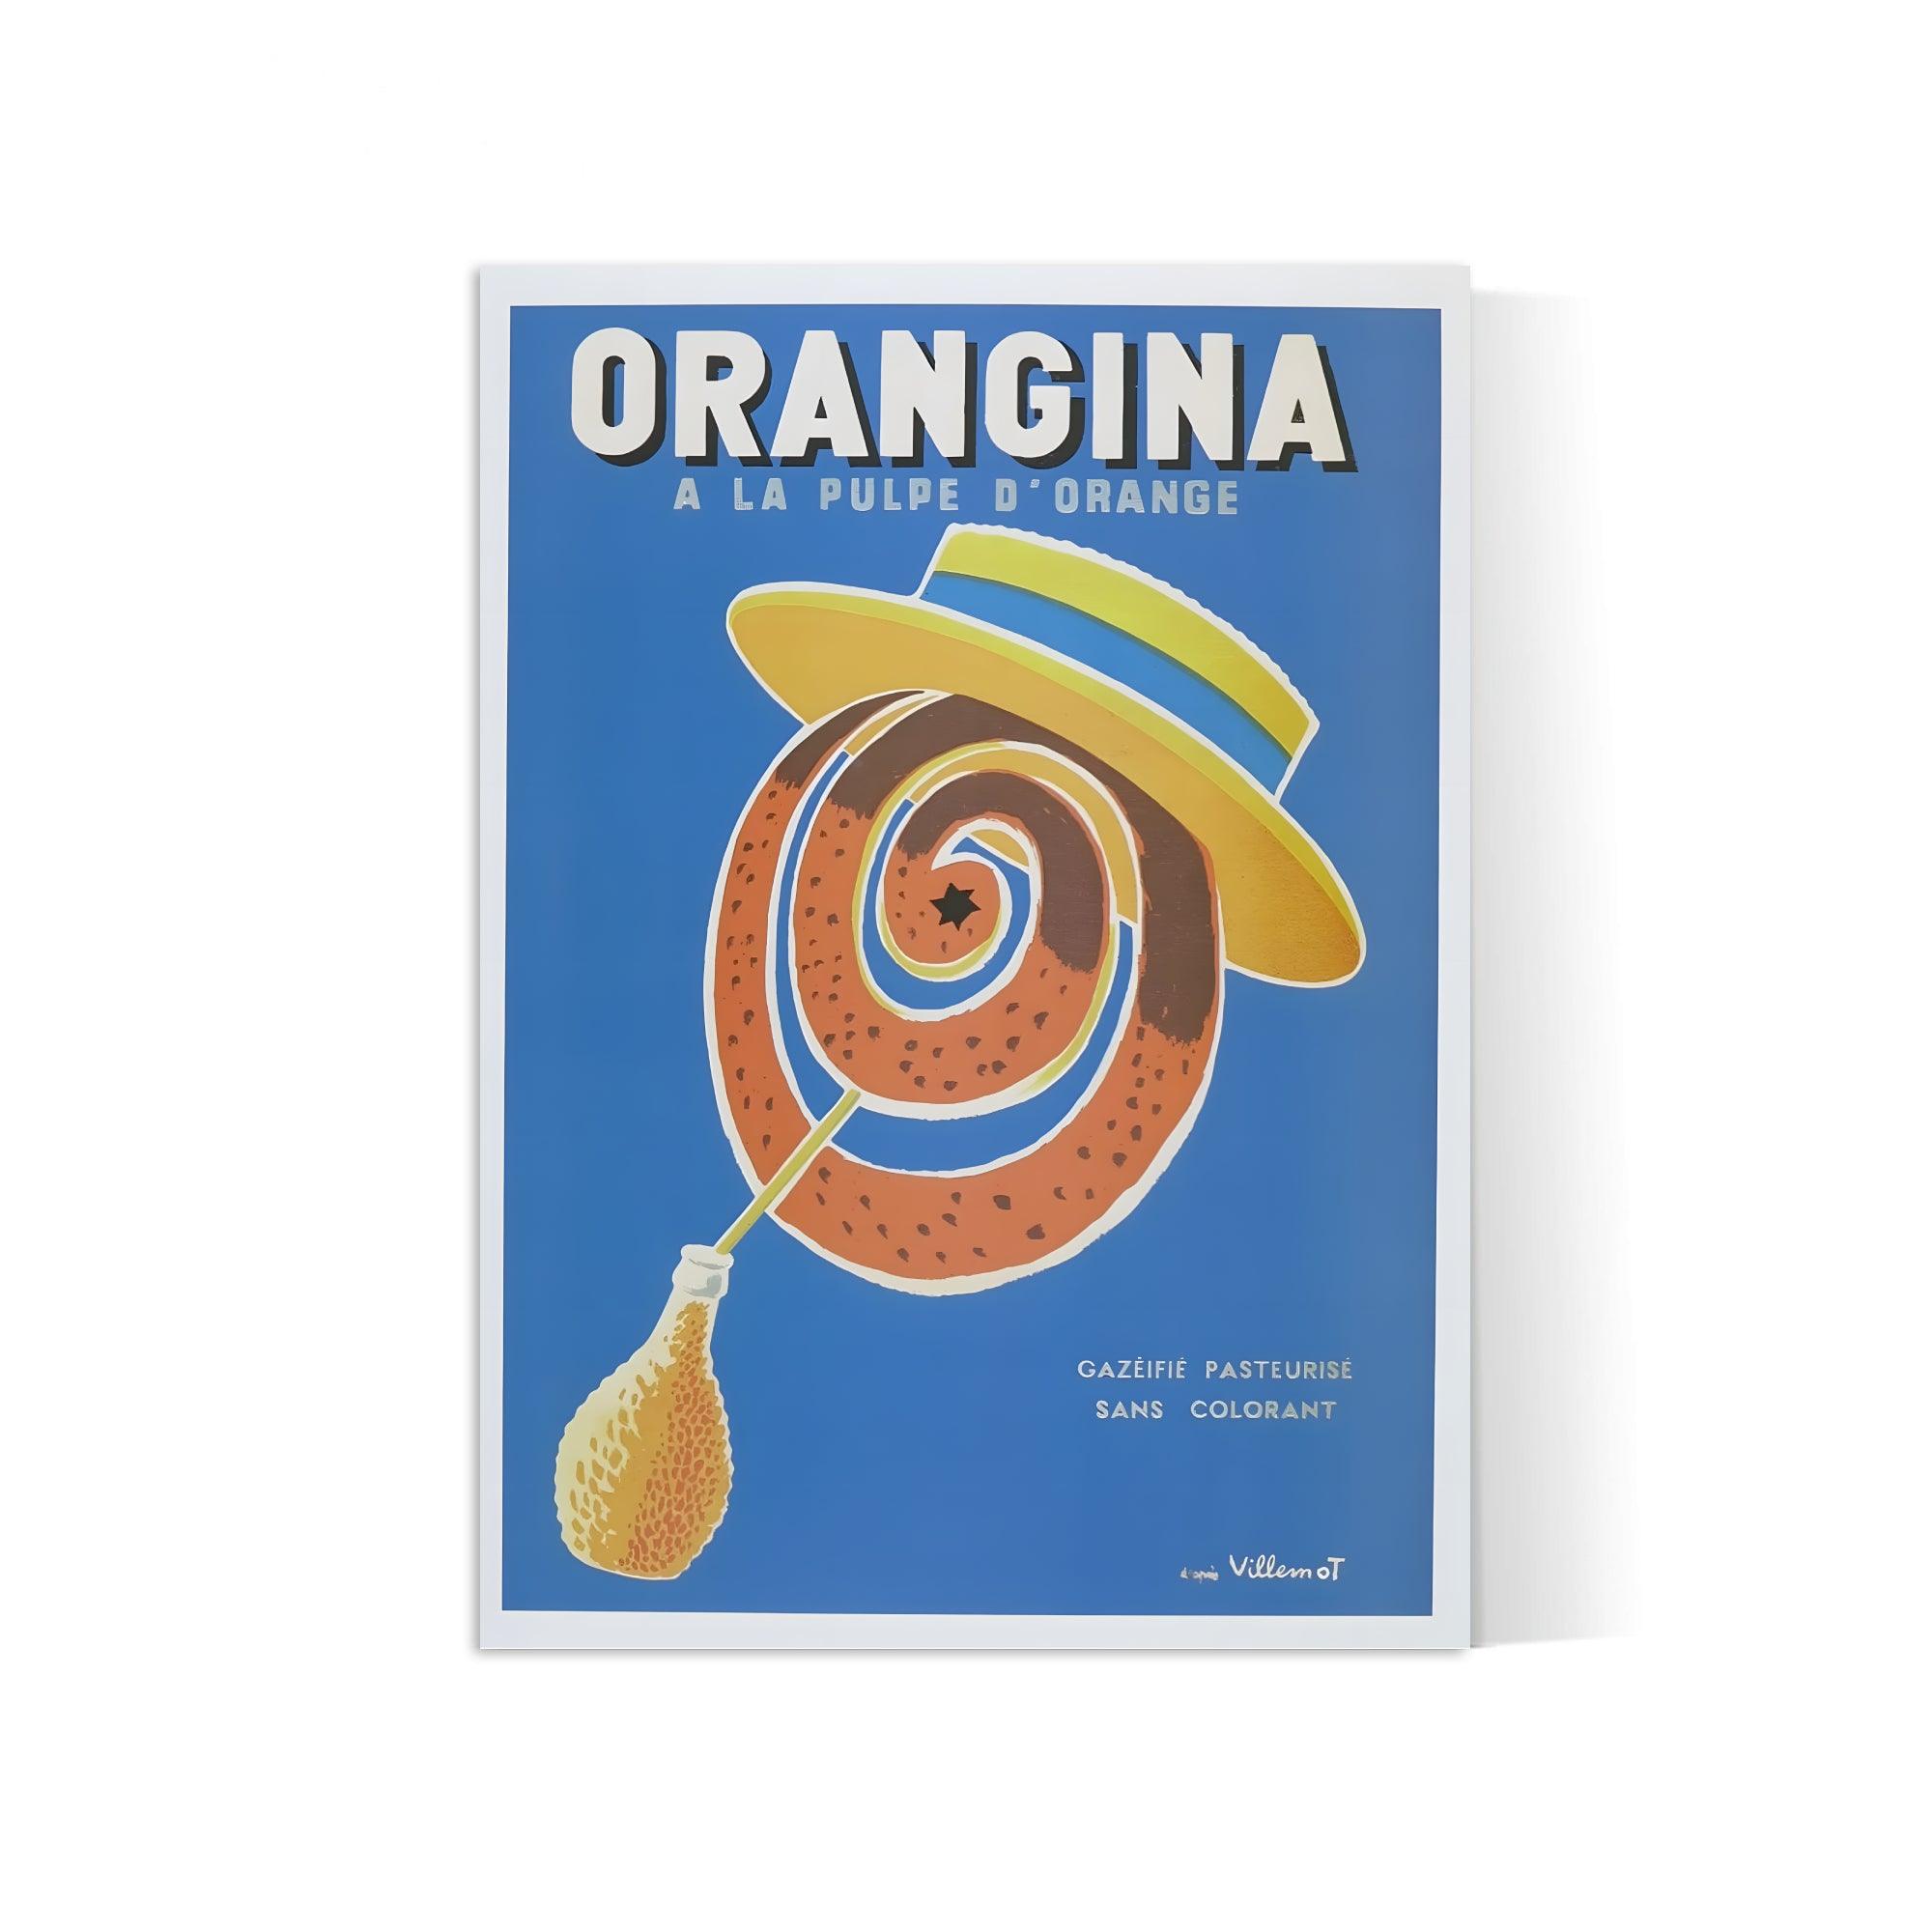 Affiche Orangina "à la pulpe d'orange" - Villemot - Haute Définition - papier mat 230gr/m² - Poster Vintage